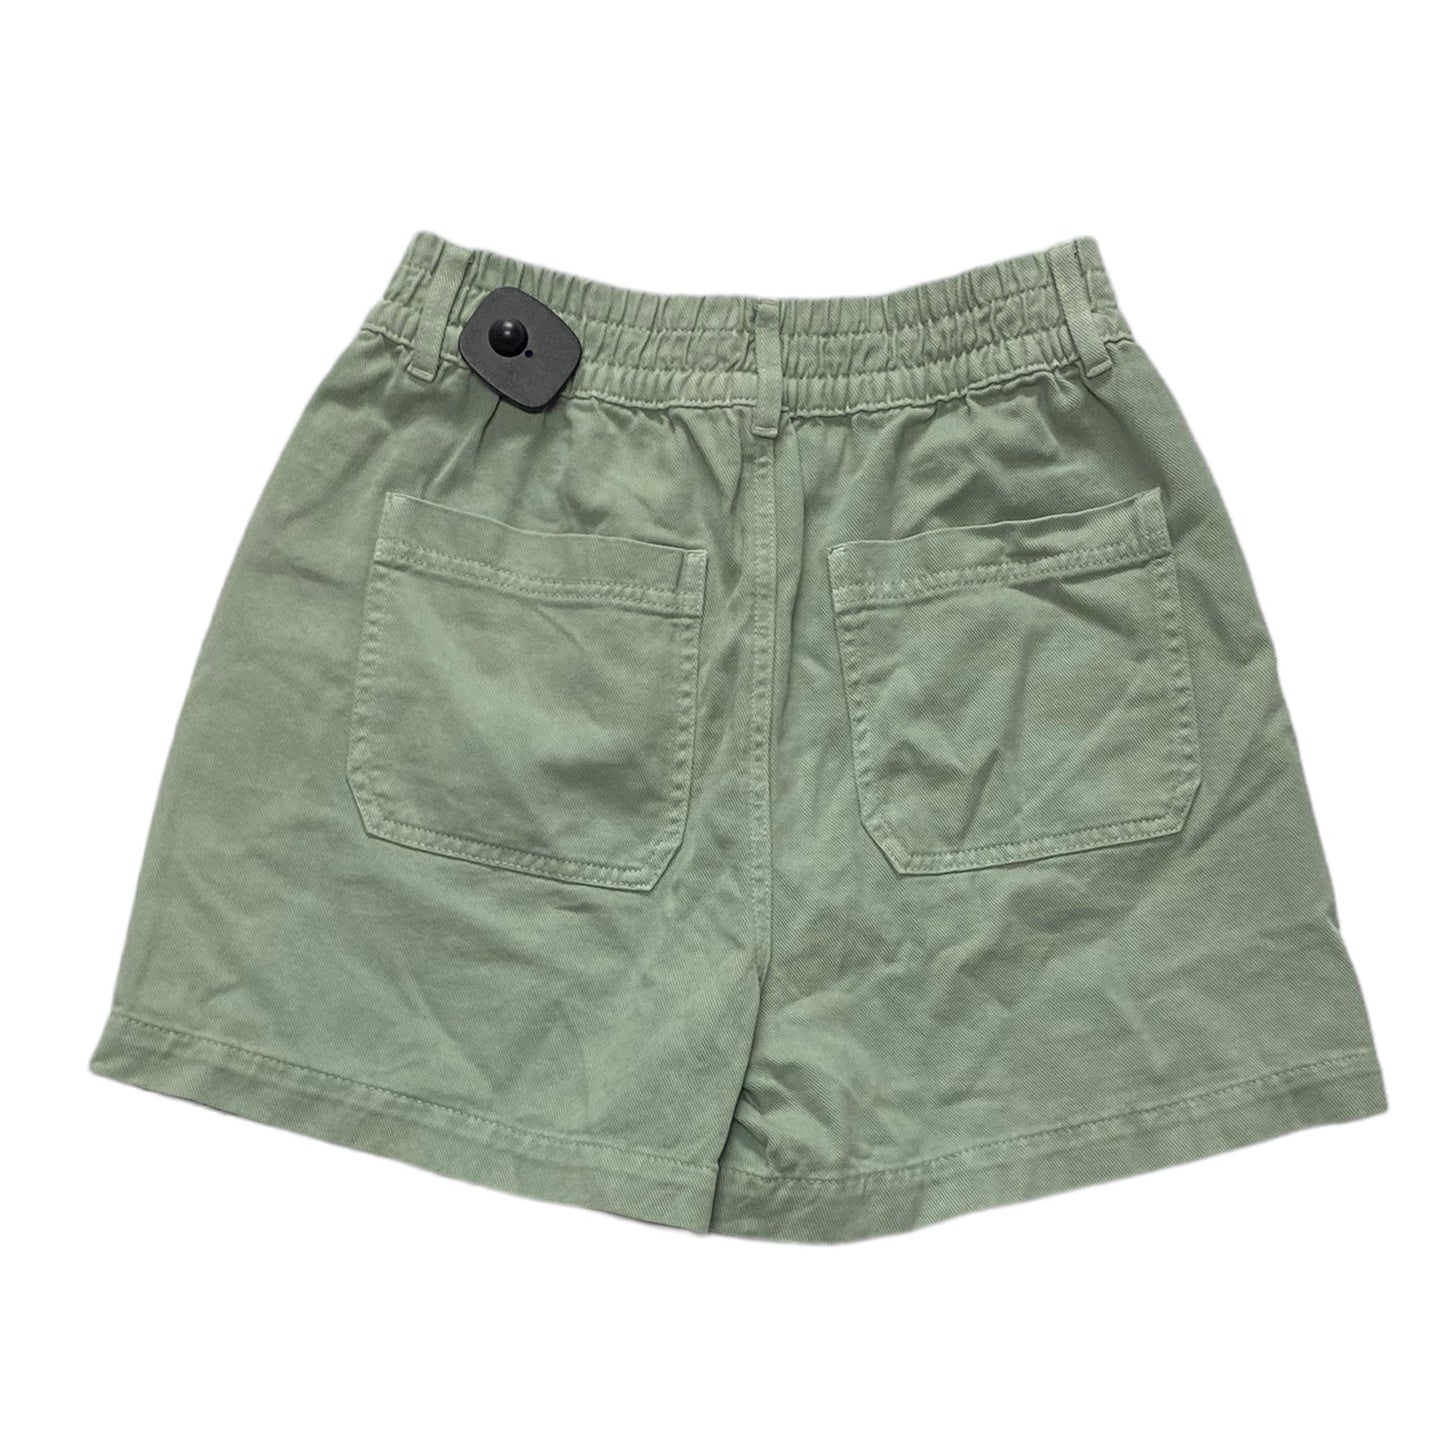 Green Shorts Garage, Size Xs